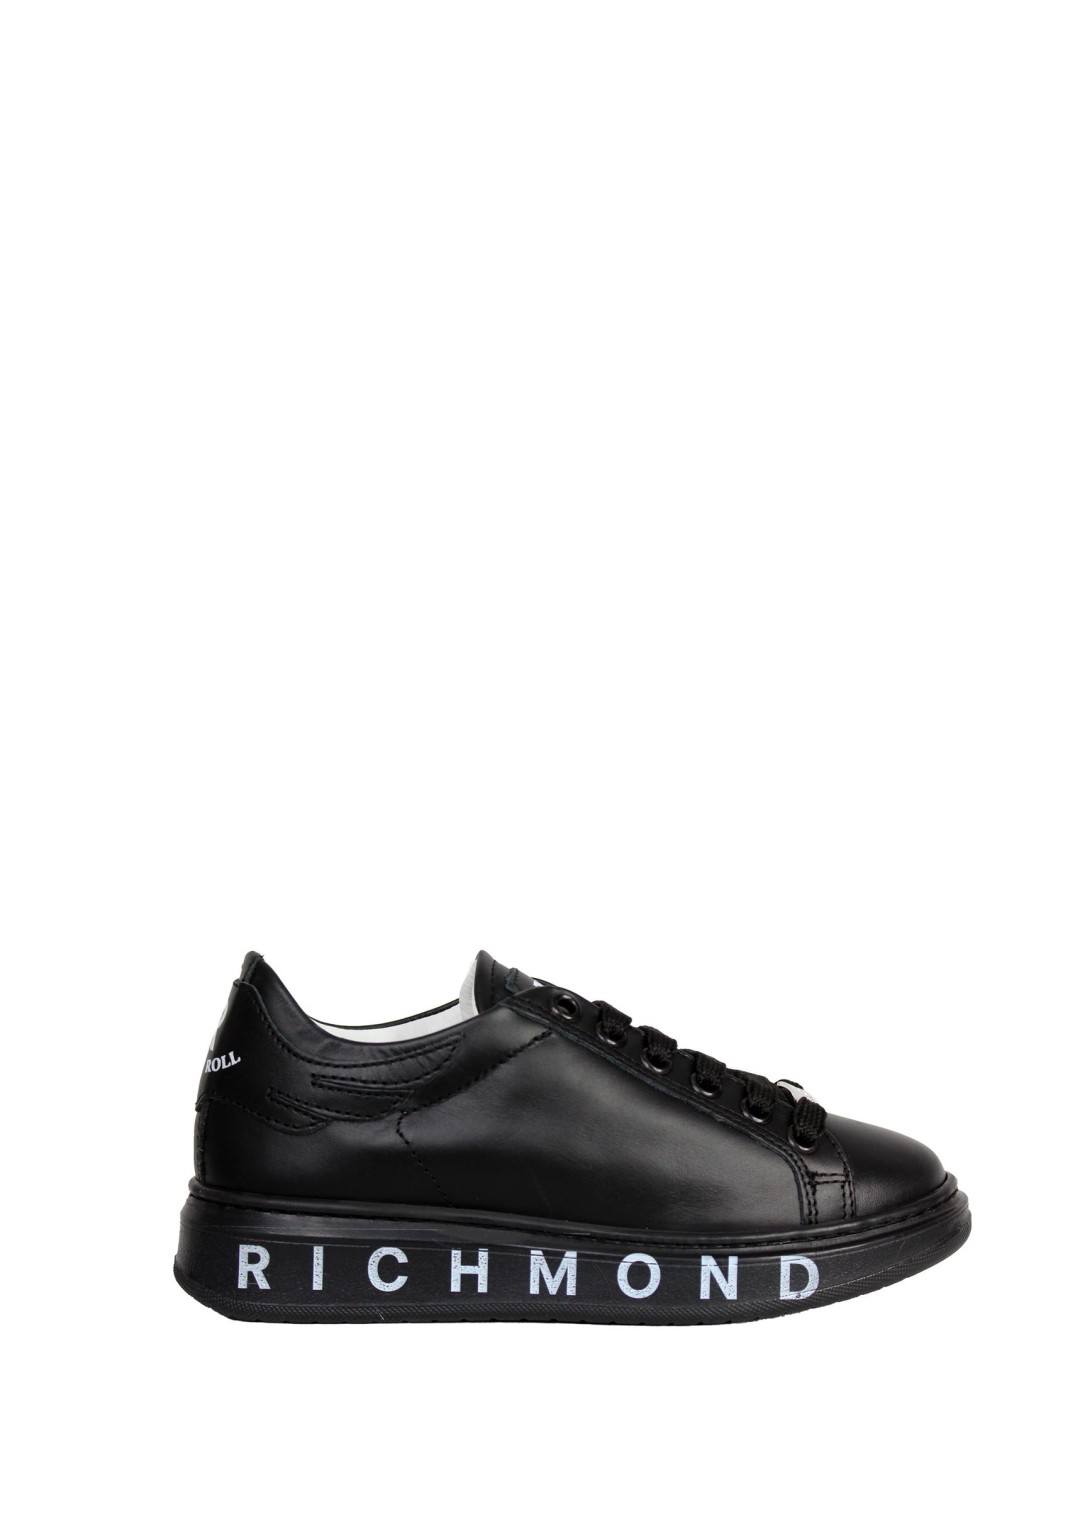 John Richmond - Sneaker F.Logato - Bambini e ragazzi - 21114 F